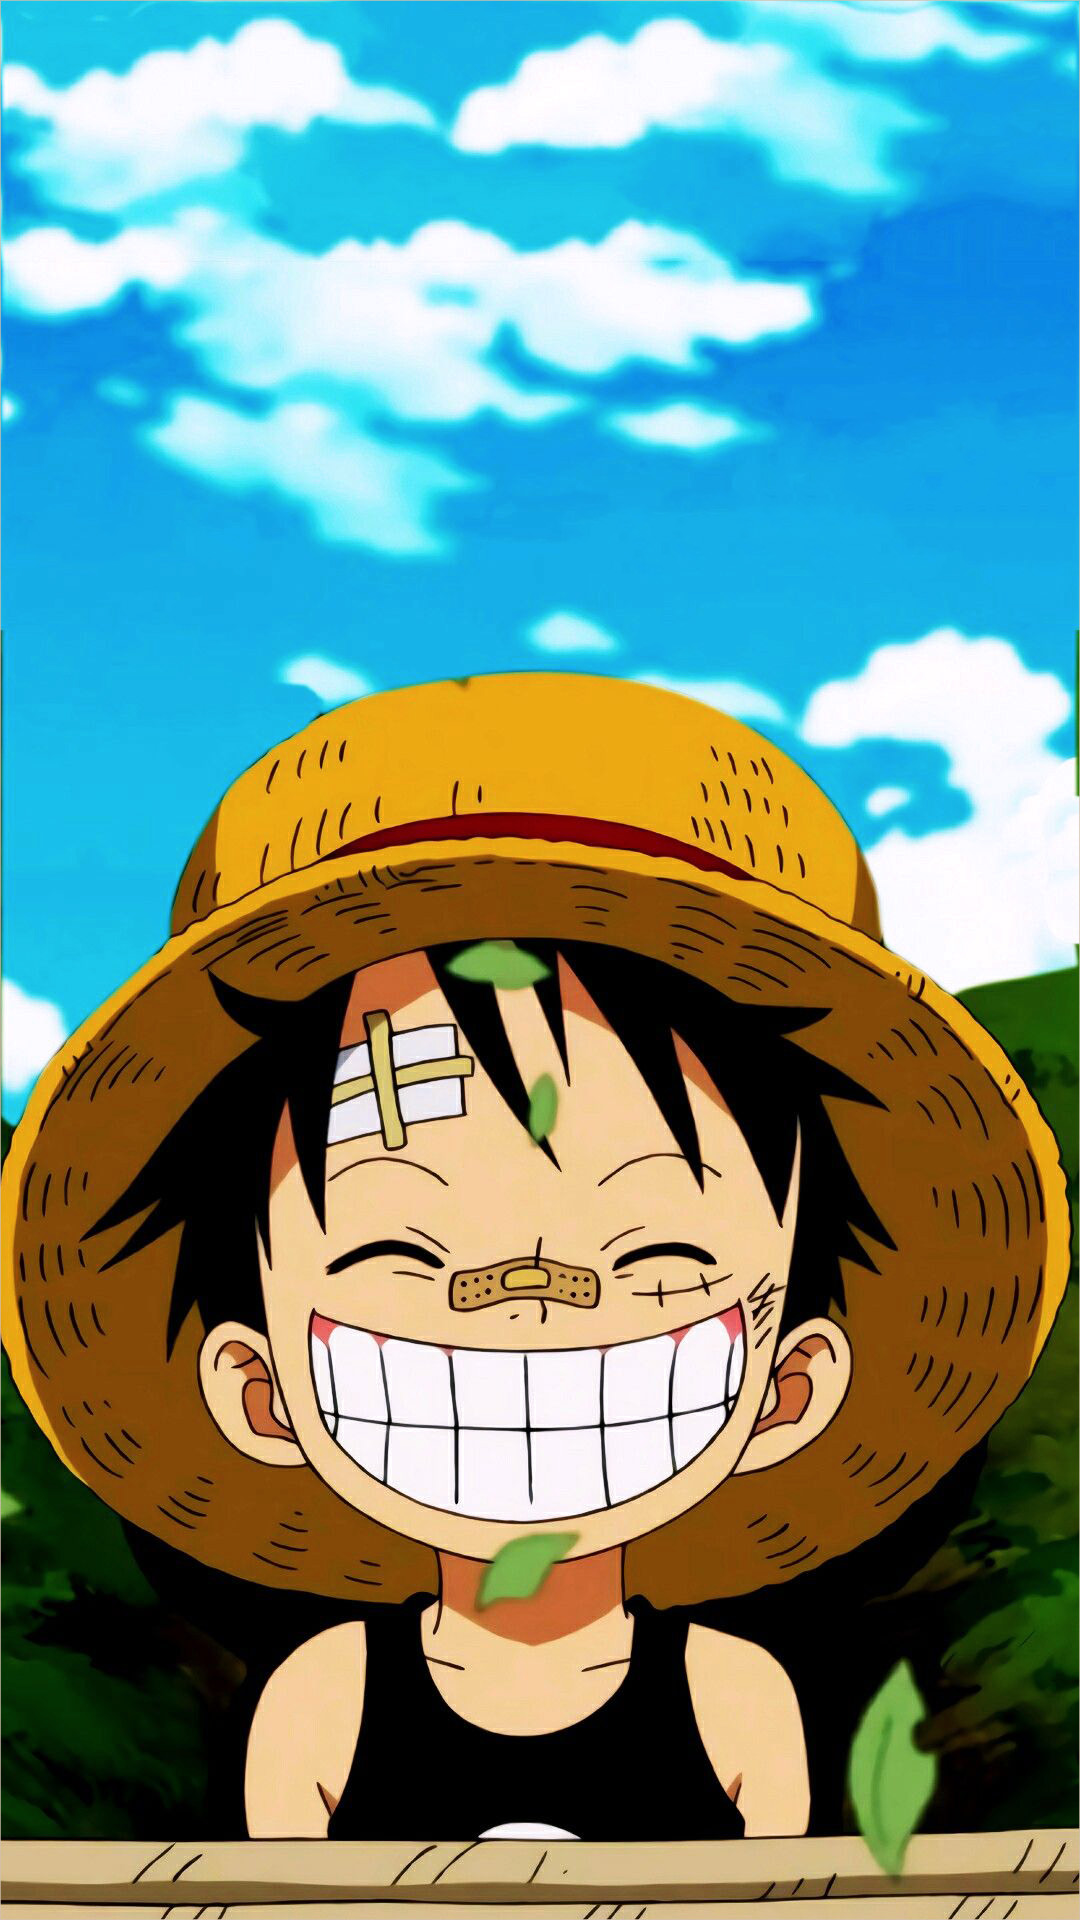 Hình Ảnh Luffy: Hình ảnh Luffy khiến người xem cảm thấy phấn khích và hào hứng. Mỗi hình ảnh đều đầy sức sống, thể hiện tính cách hài hước và lãng mạn của nhân vật. Đó là lý do tại sao fan hâm mộ One Piece luôn ưa thích việc tìm kiếm hình ảnh của Luffy.